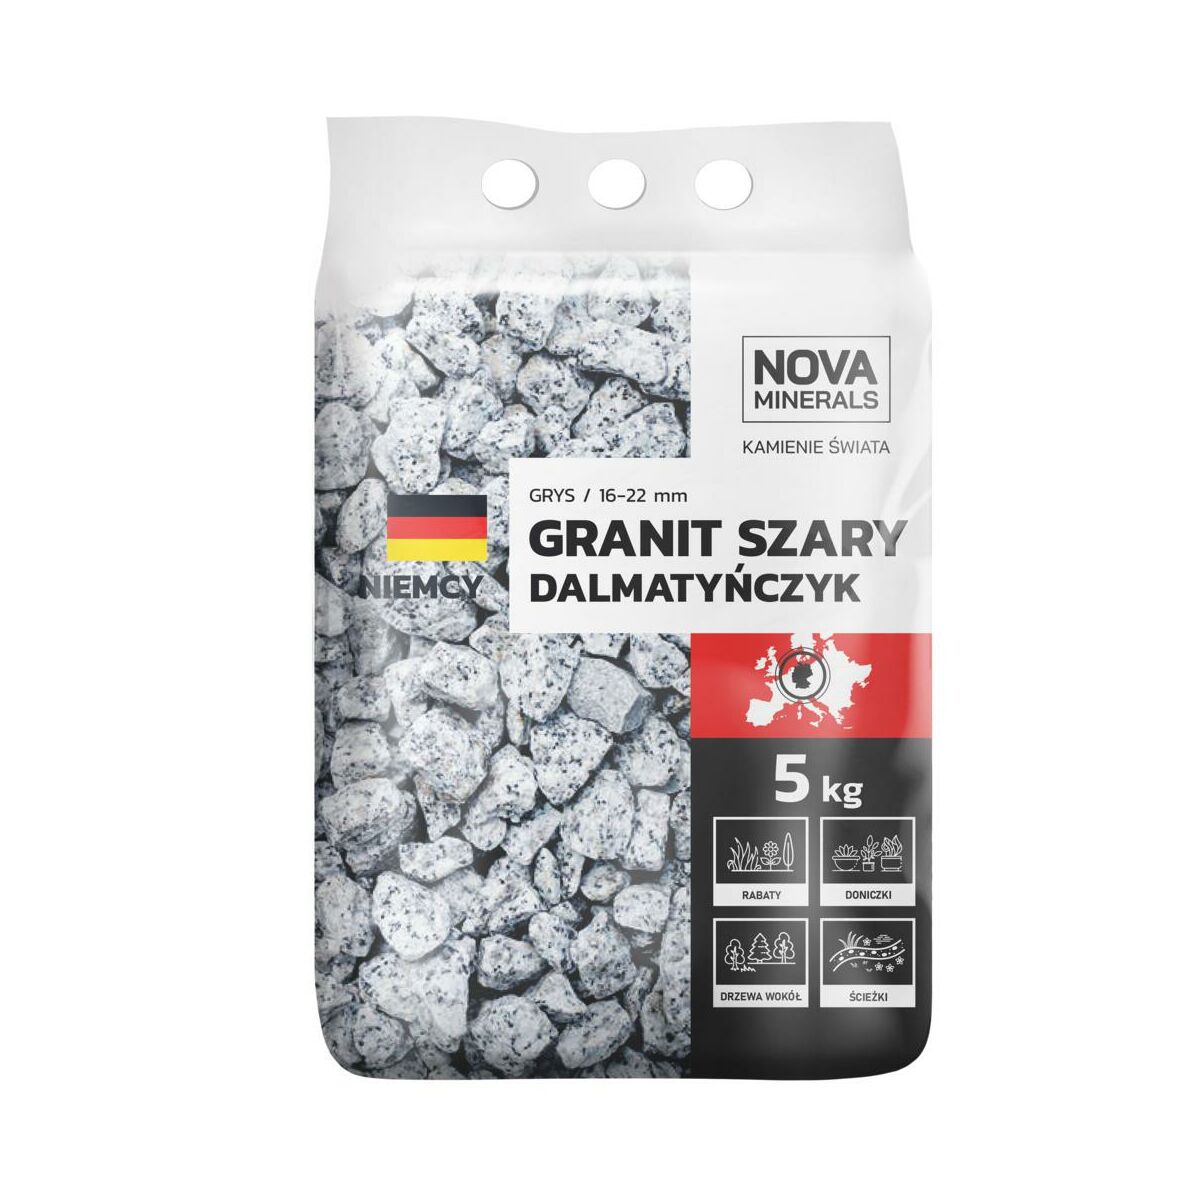 Grys Dalmatyńczyk 16-22mm 5kg szary Nova minerals